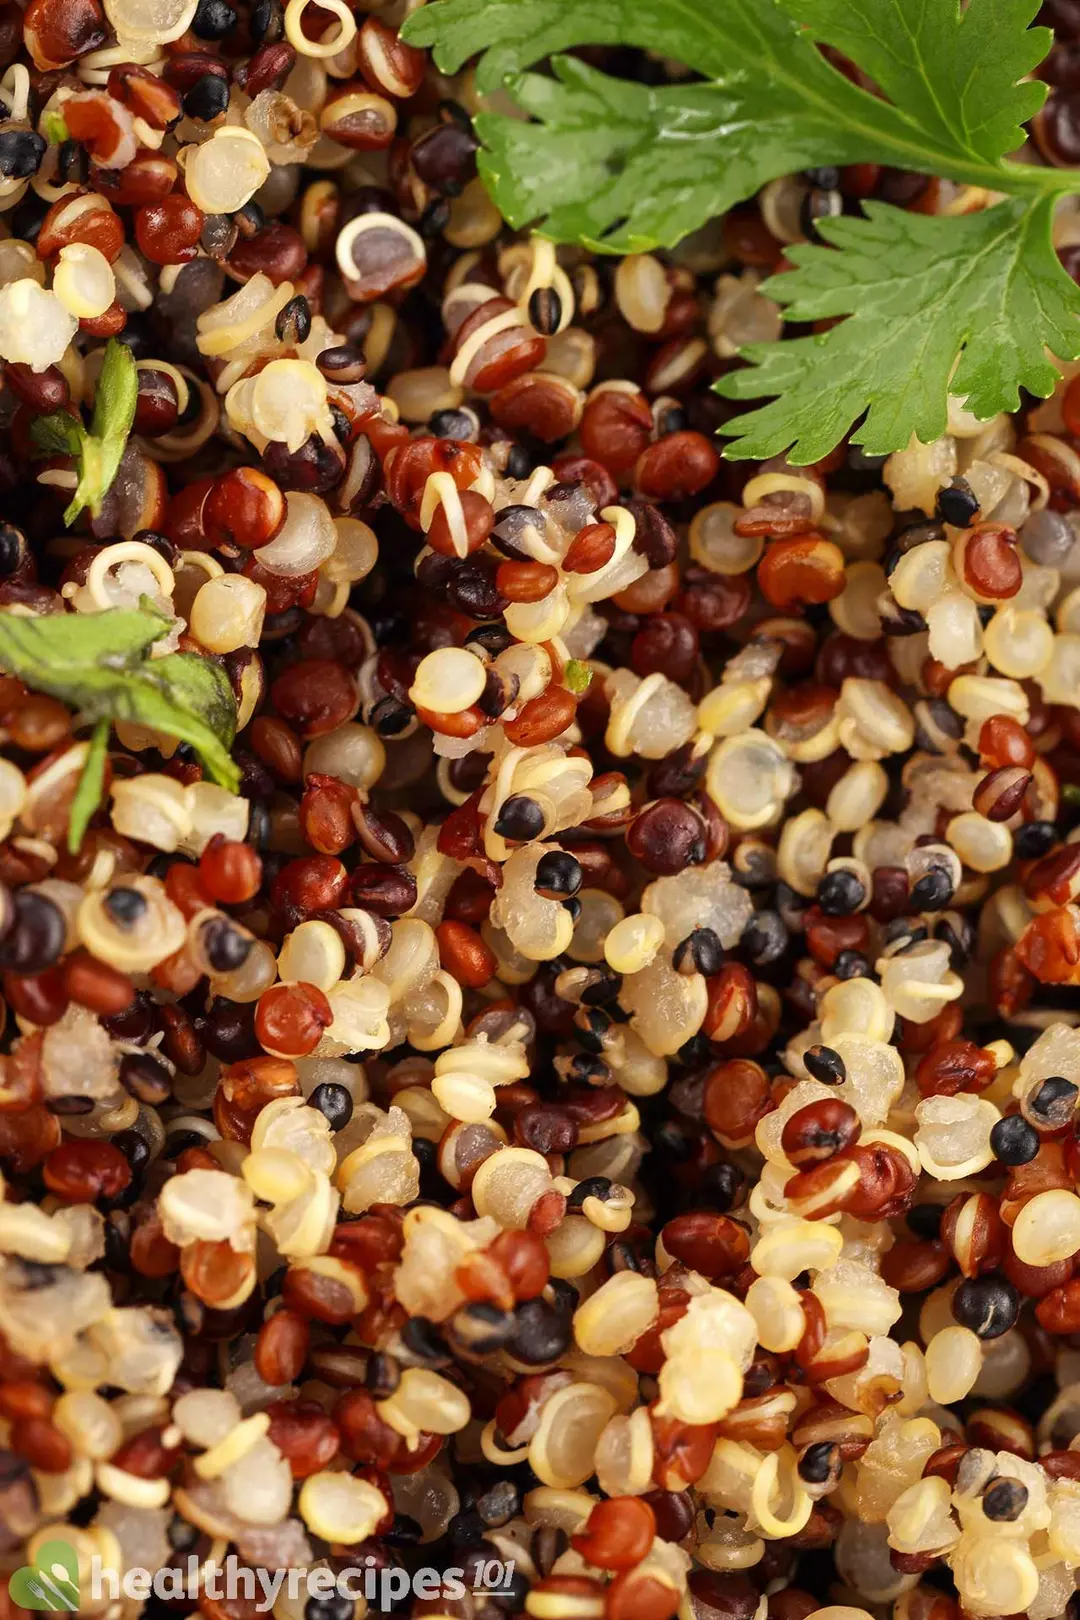 How To Cook Quinoa in Instant Pot Recipe